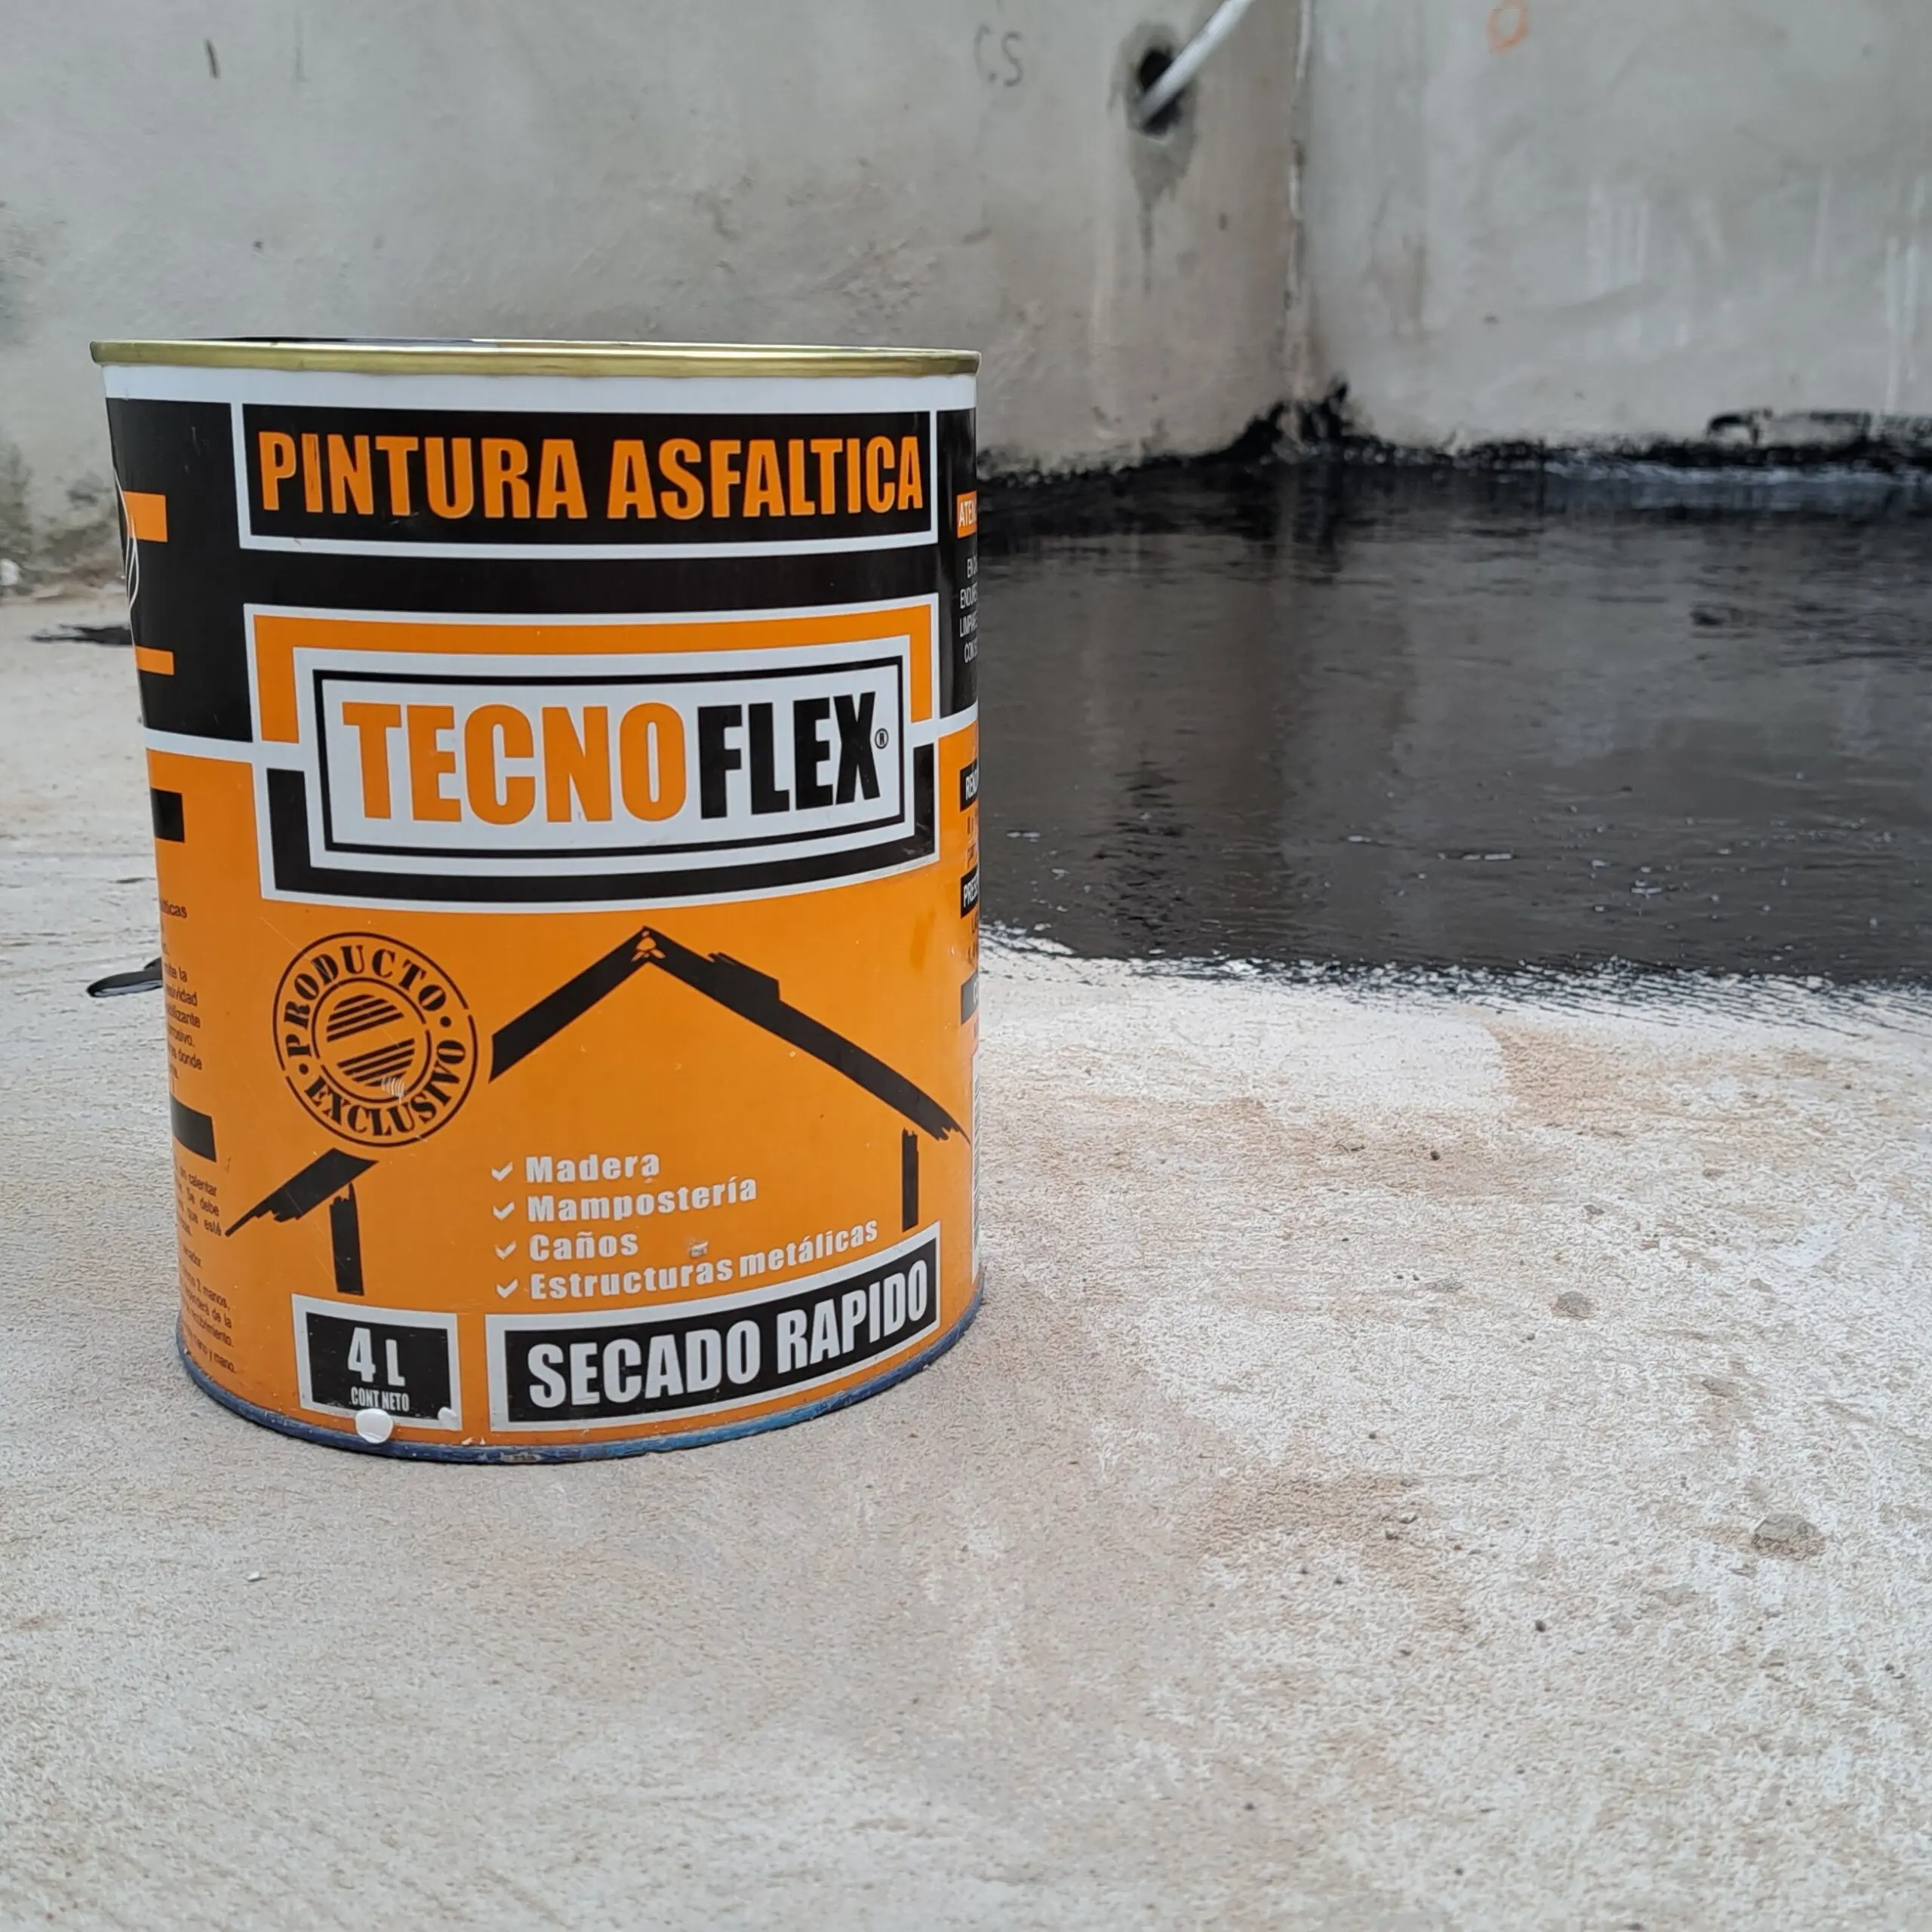 poliestireno y pintura asfaltica - Cuánto dura la pintura asfaltica